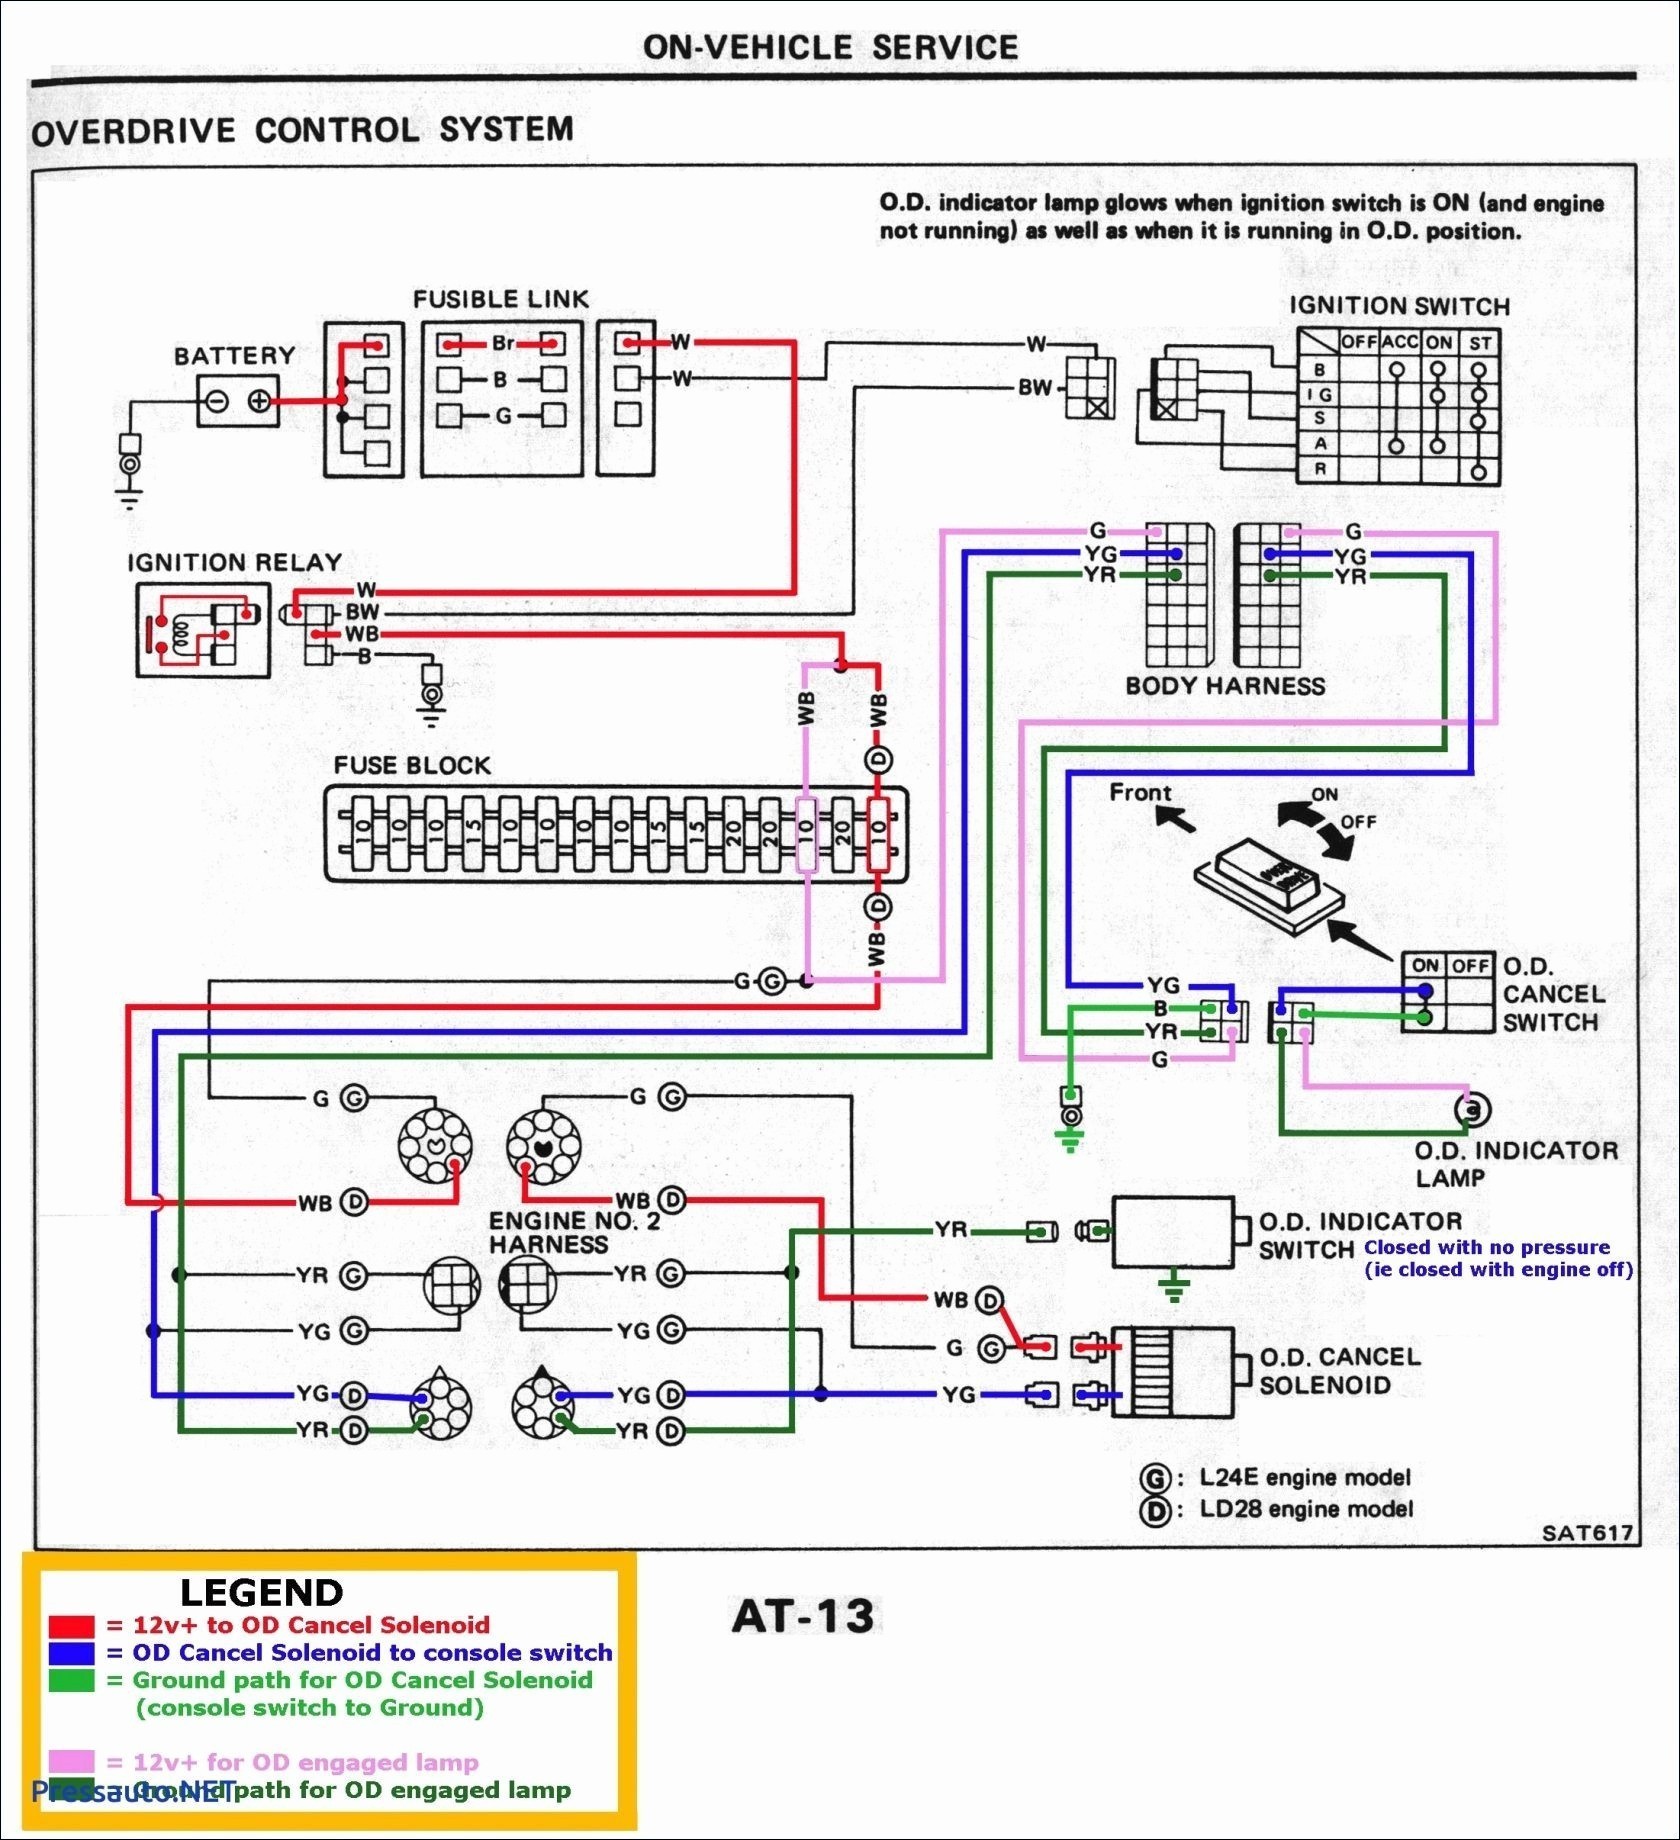 Mazda Rotary Engine Diagram Data Cat5 Wiring Diagram Data Schematics Wiring Diagram • Of Mazda Rotary Engine Diagram